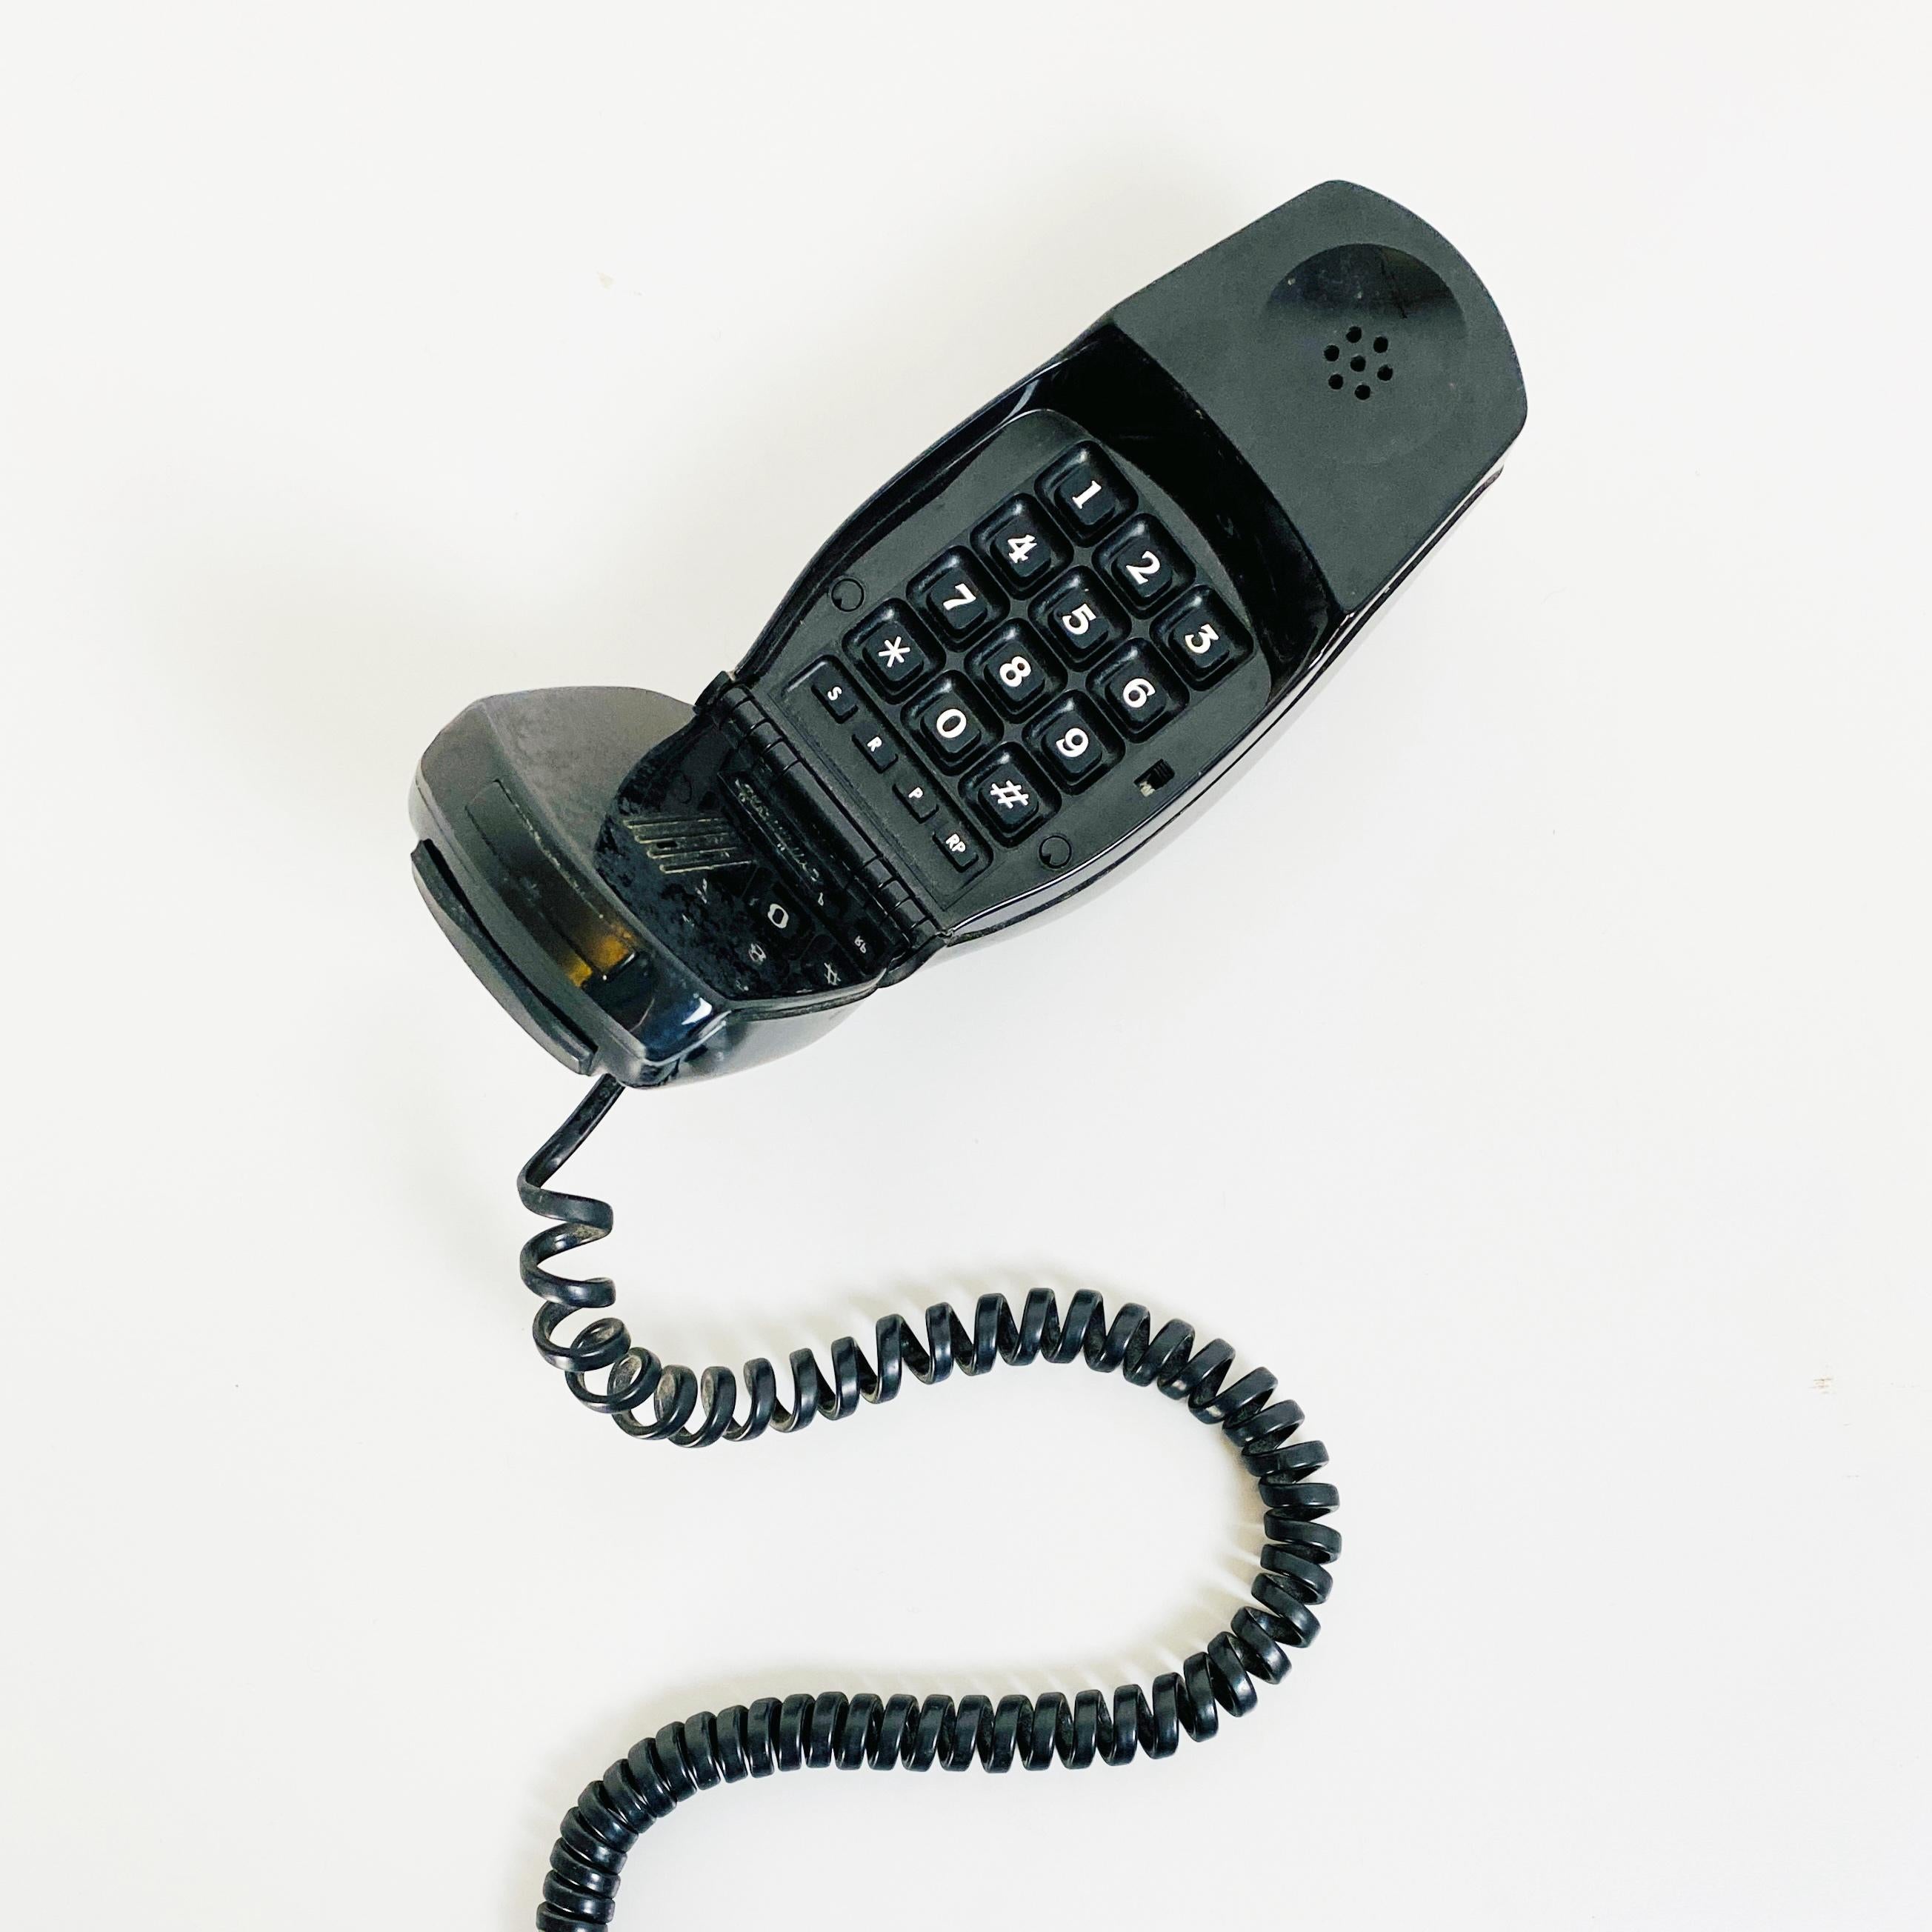 1965 telephone